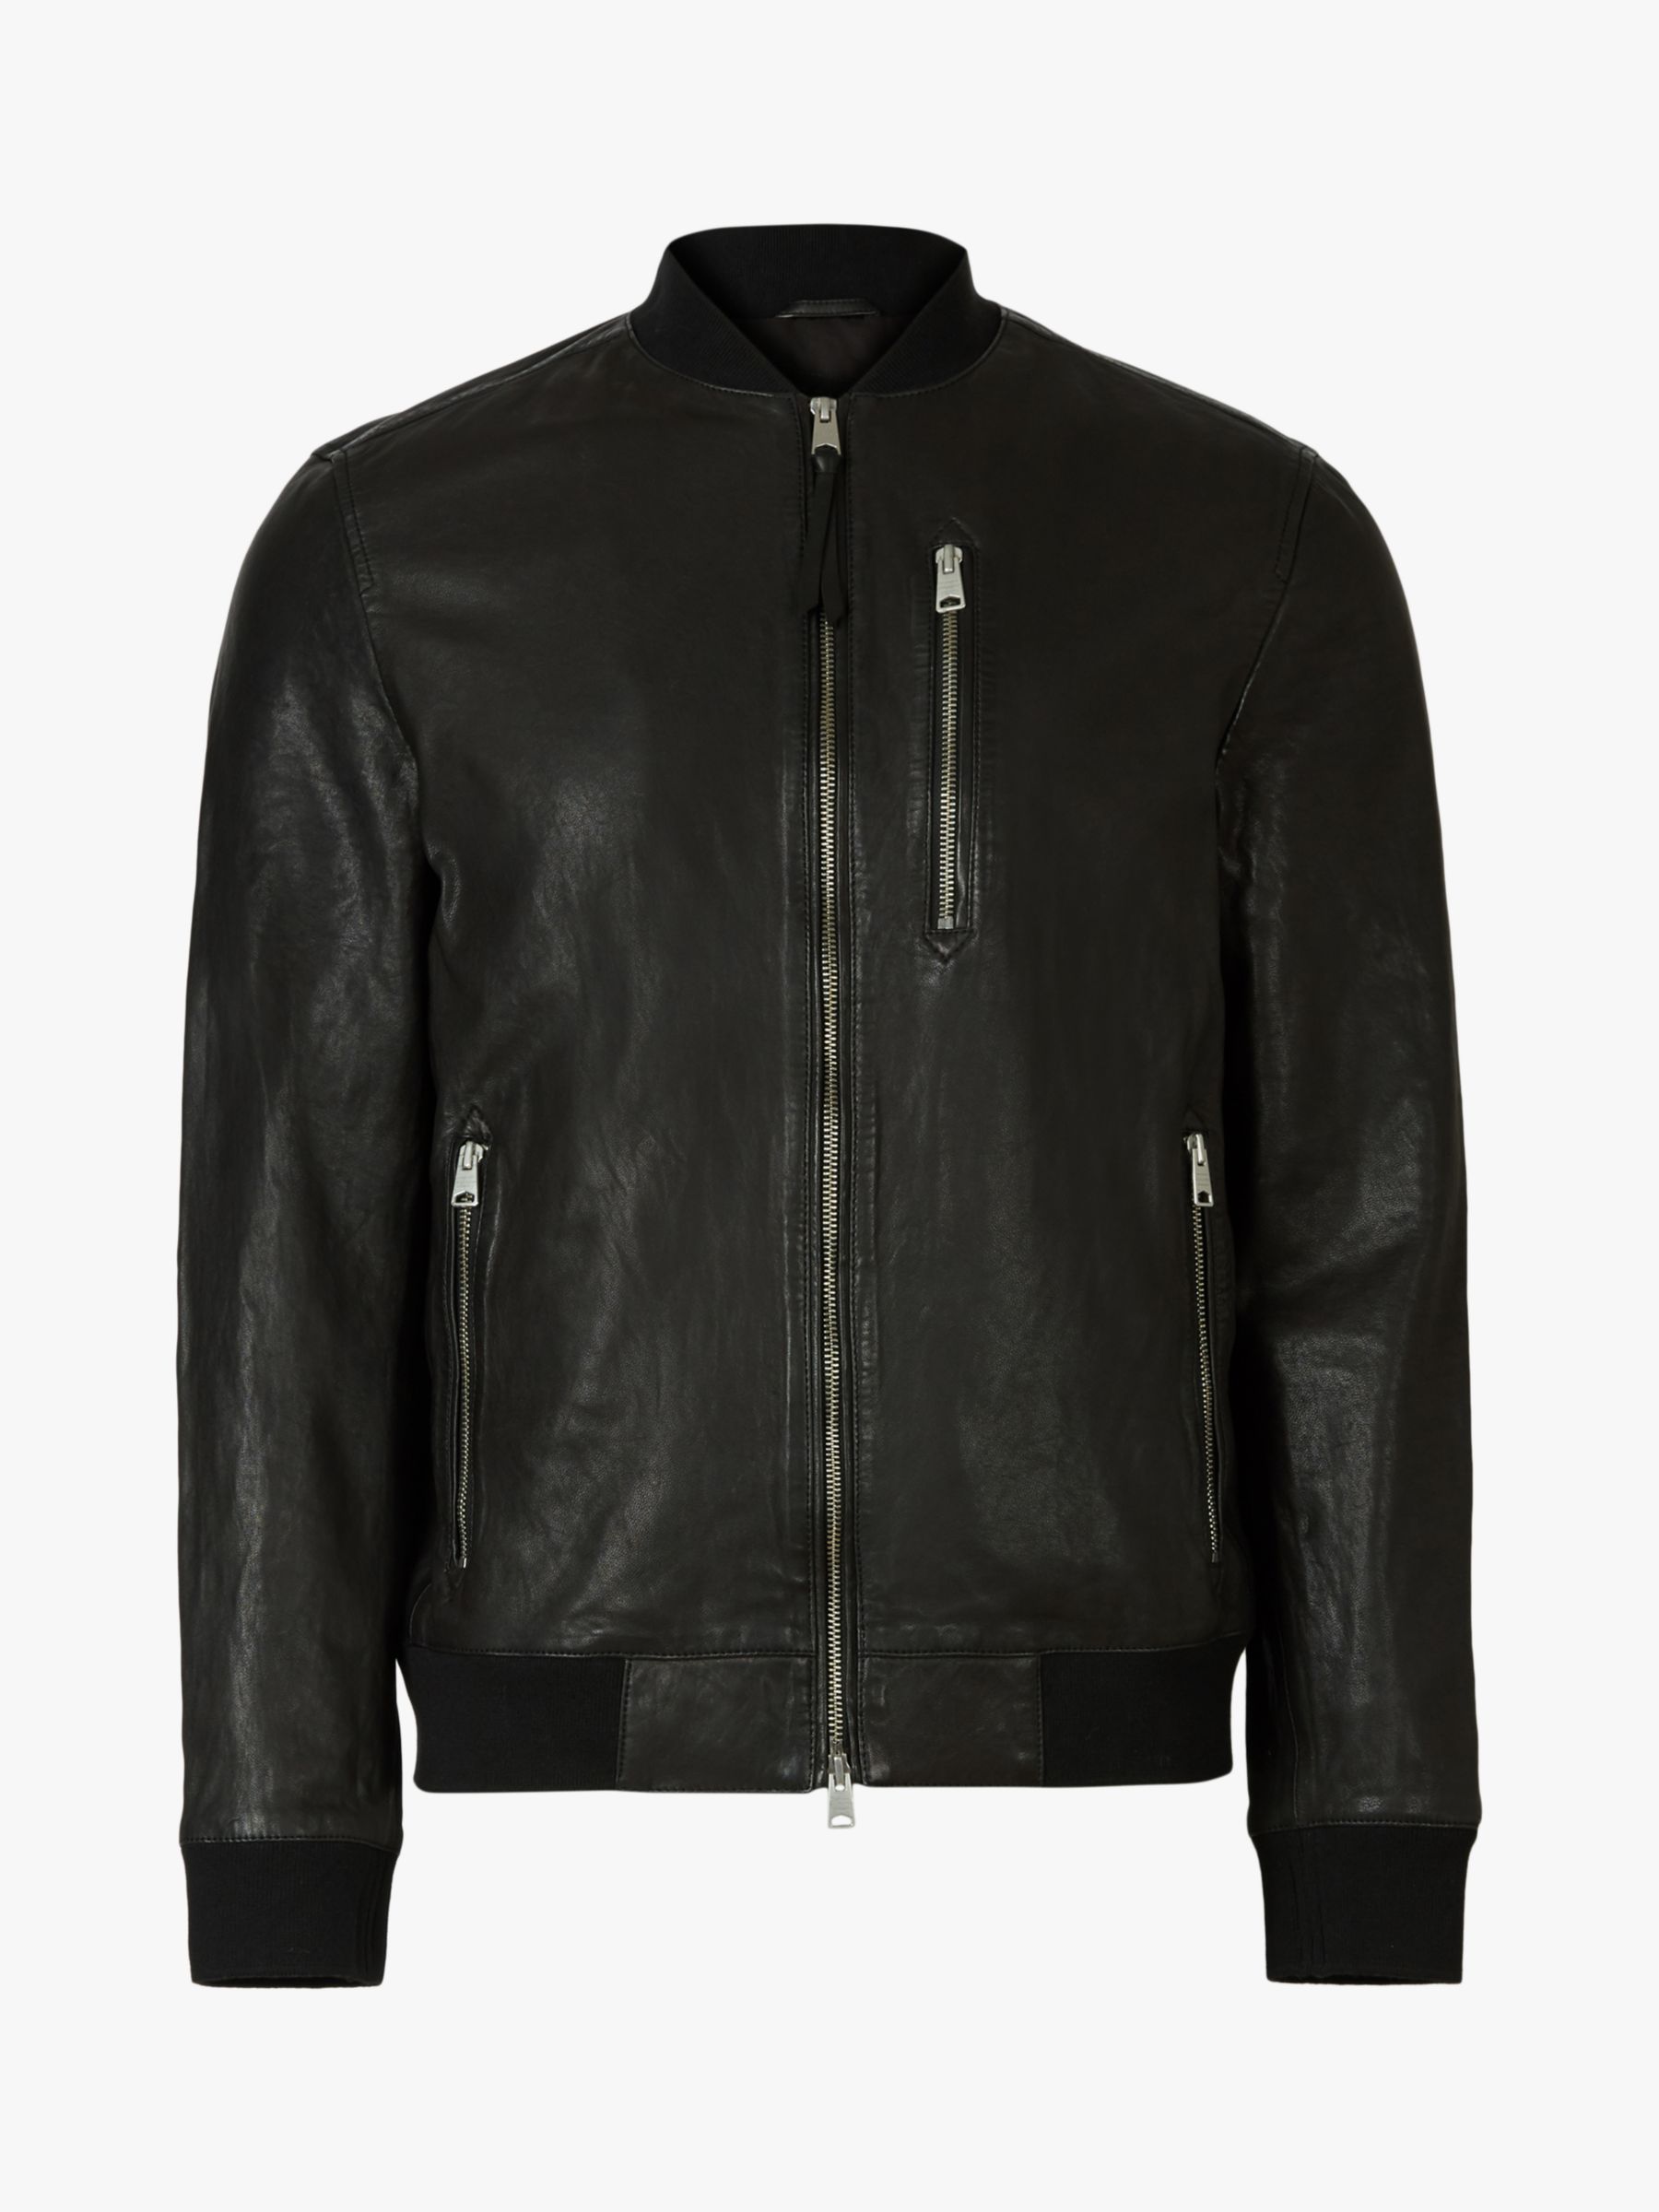 AllSaints Boyton Leather Bomber Jacket, Black